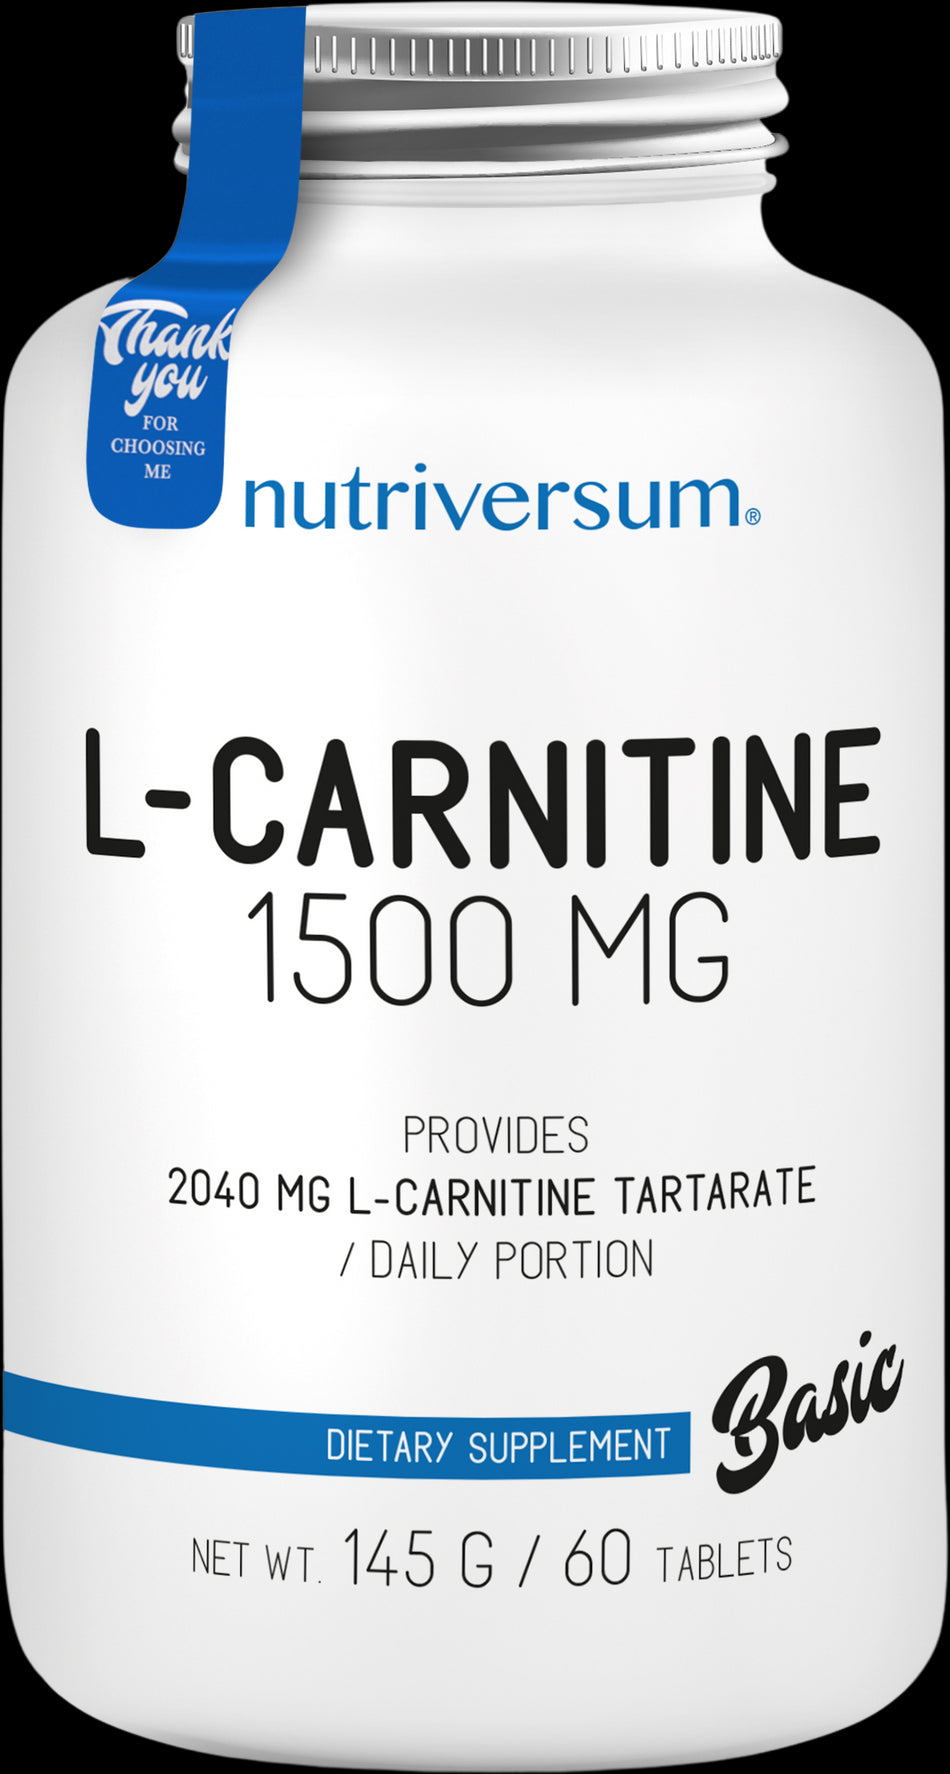 L-Carnitine 1500 mg - BadiZdrav.BG